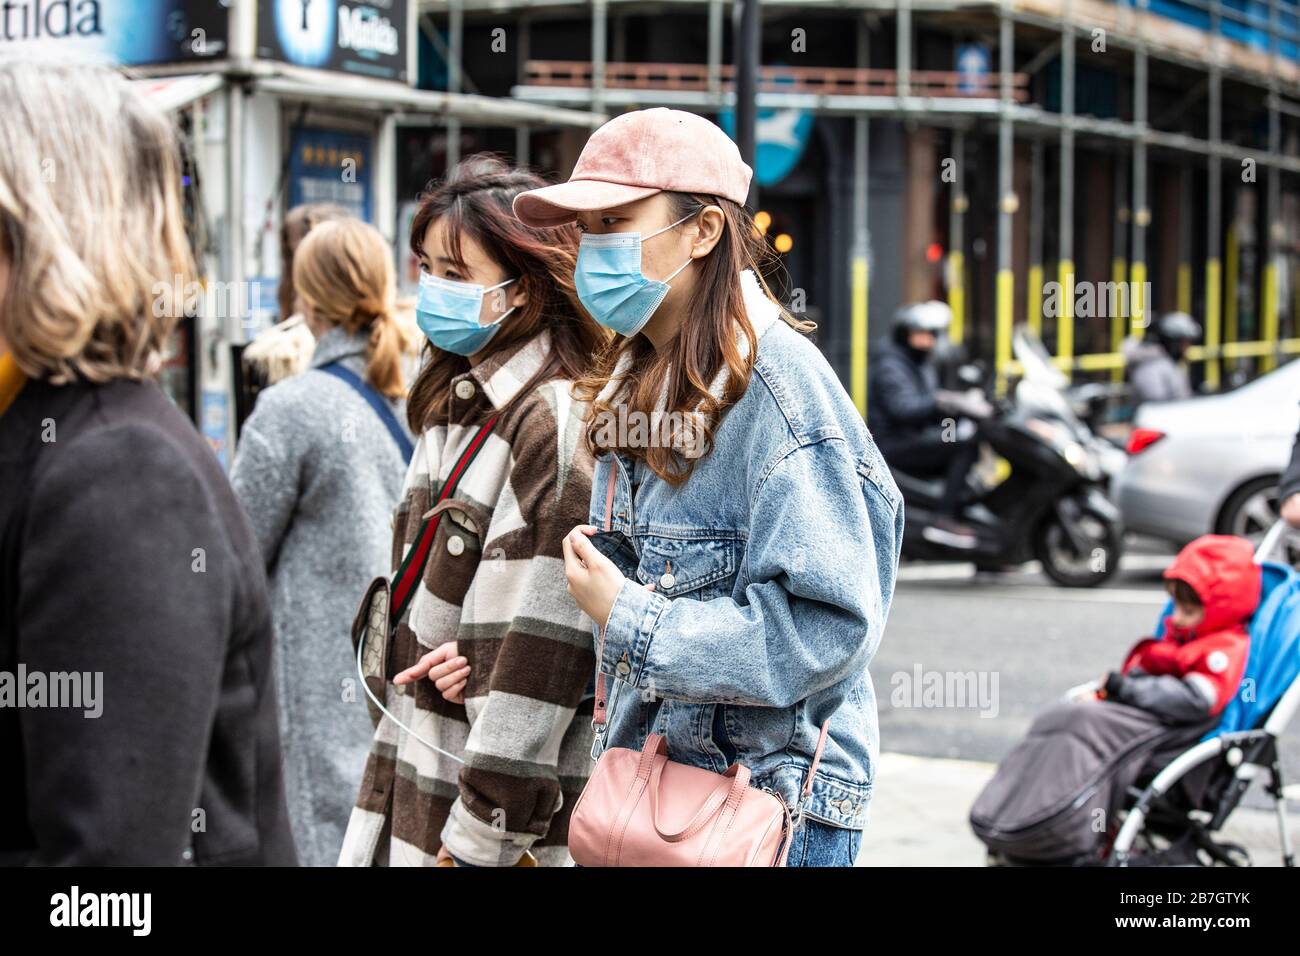 Les voyageurs prennent des précautions en portant des masques de visage dans le West End de Londres contre l'infection de la pandémie de Covid19 de Coronavirus, Angleterre, Royaume-Uni Banque D'Images